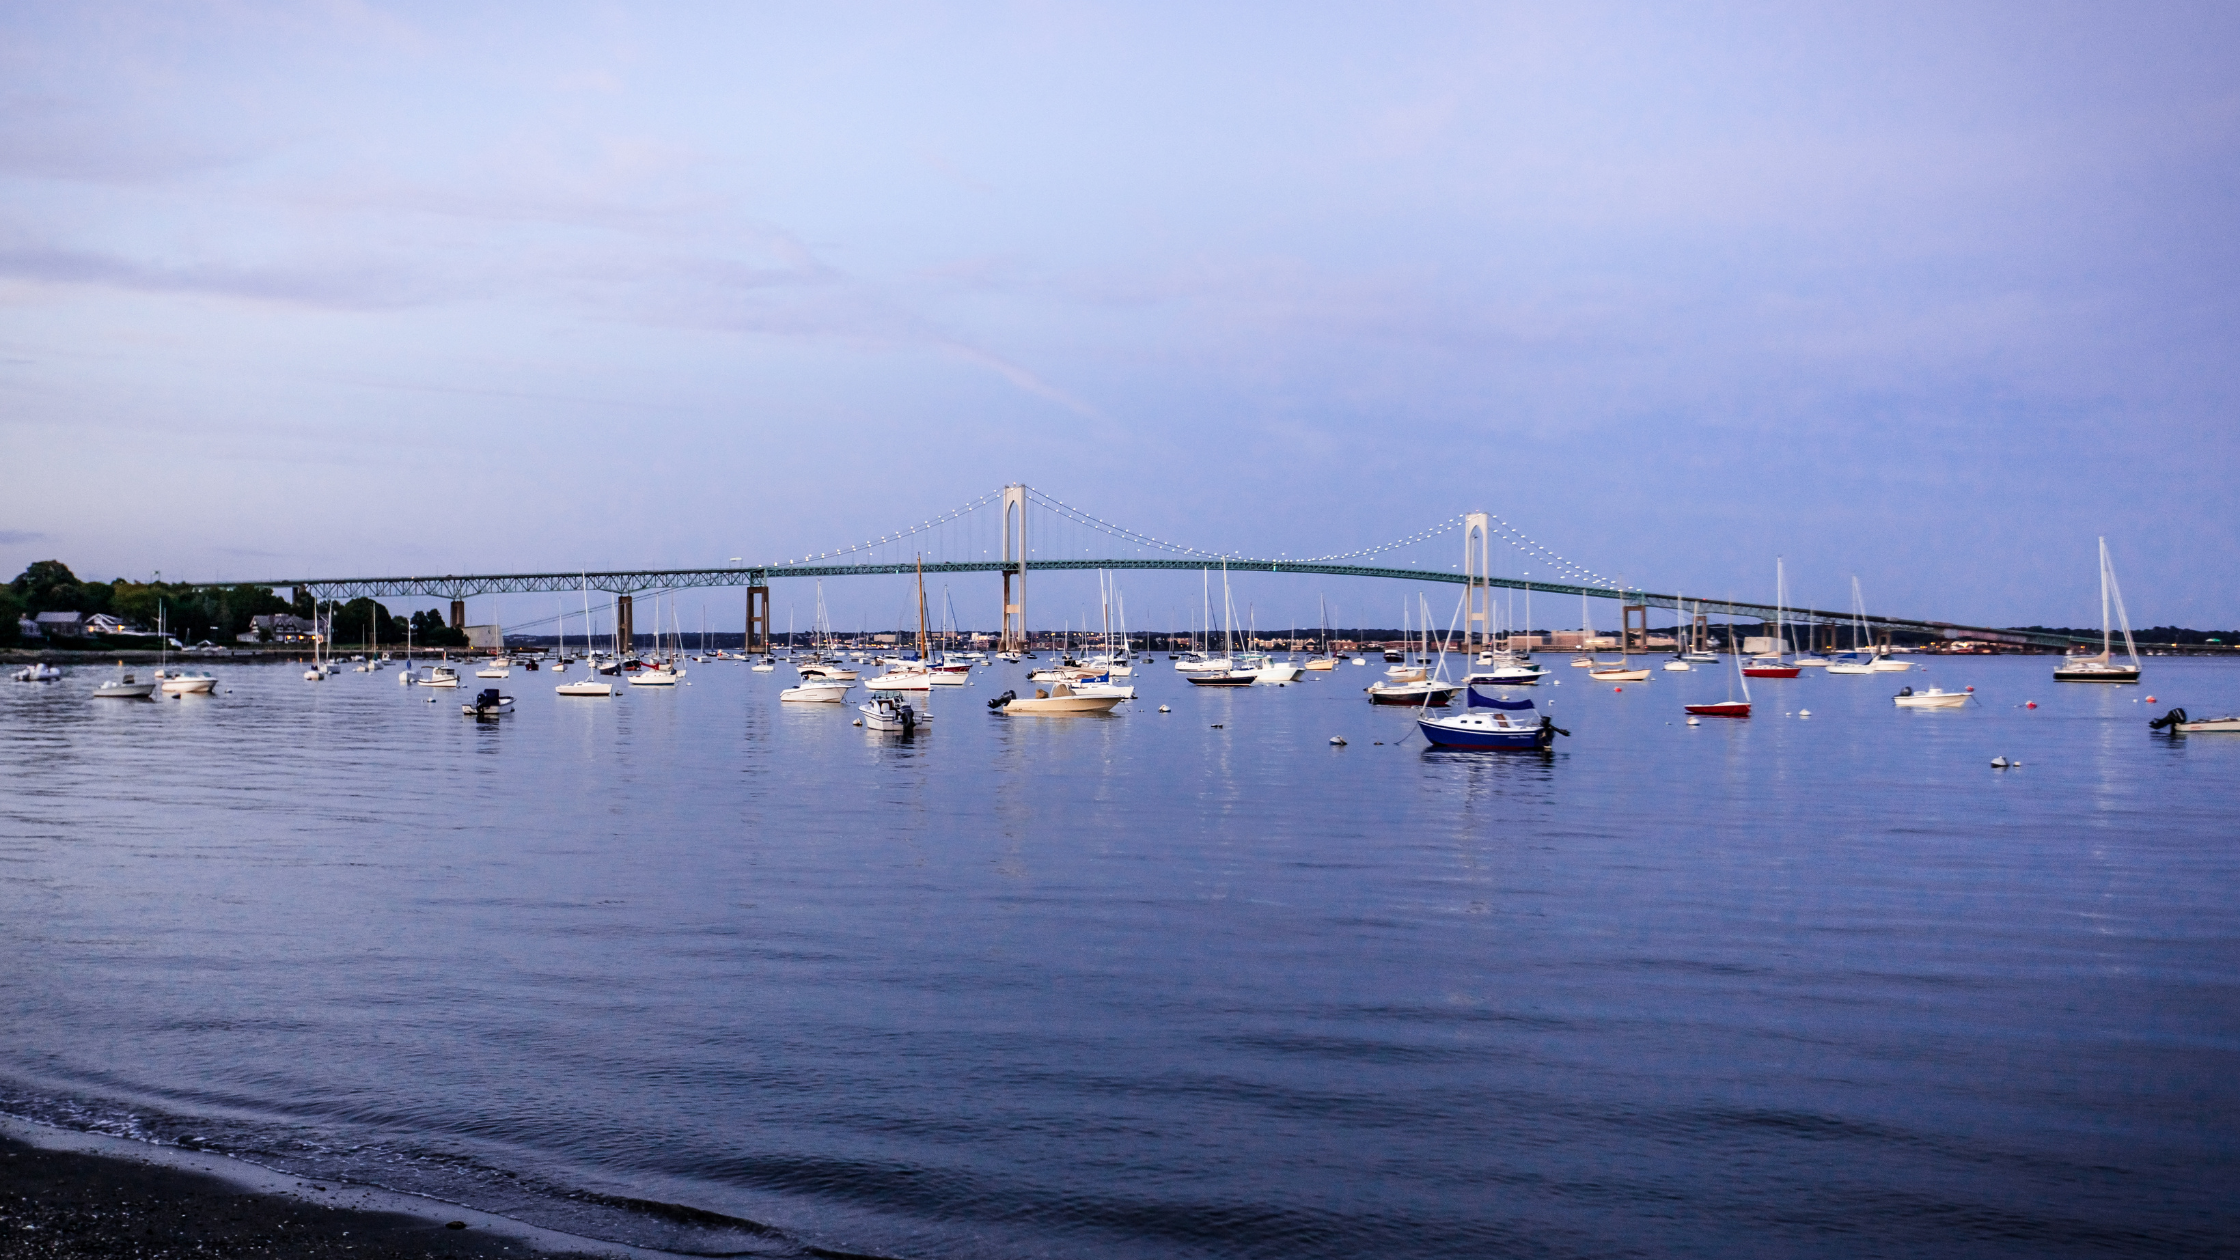 Snag-A-Slip Blog - 2022 Top Boating Destinations - Newport Rhode Island